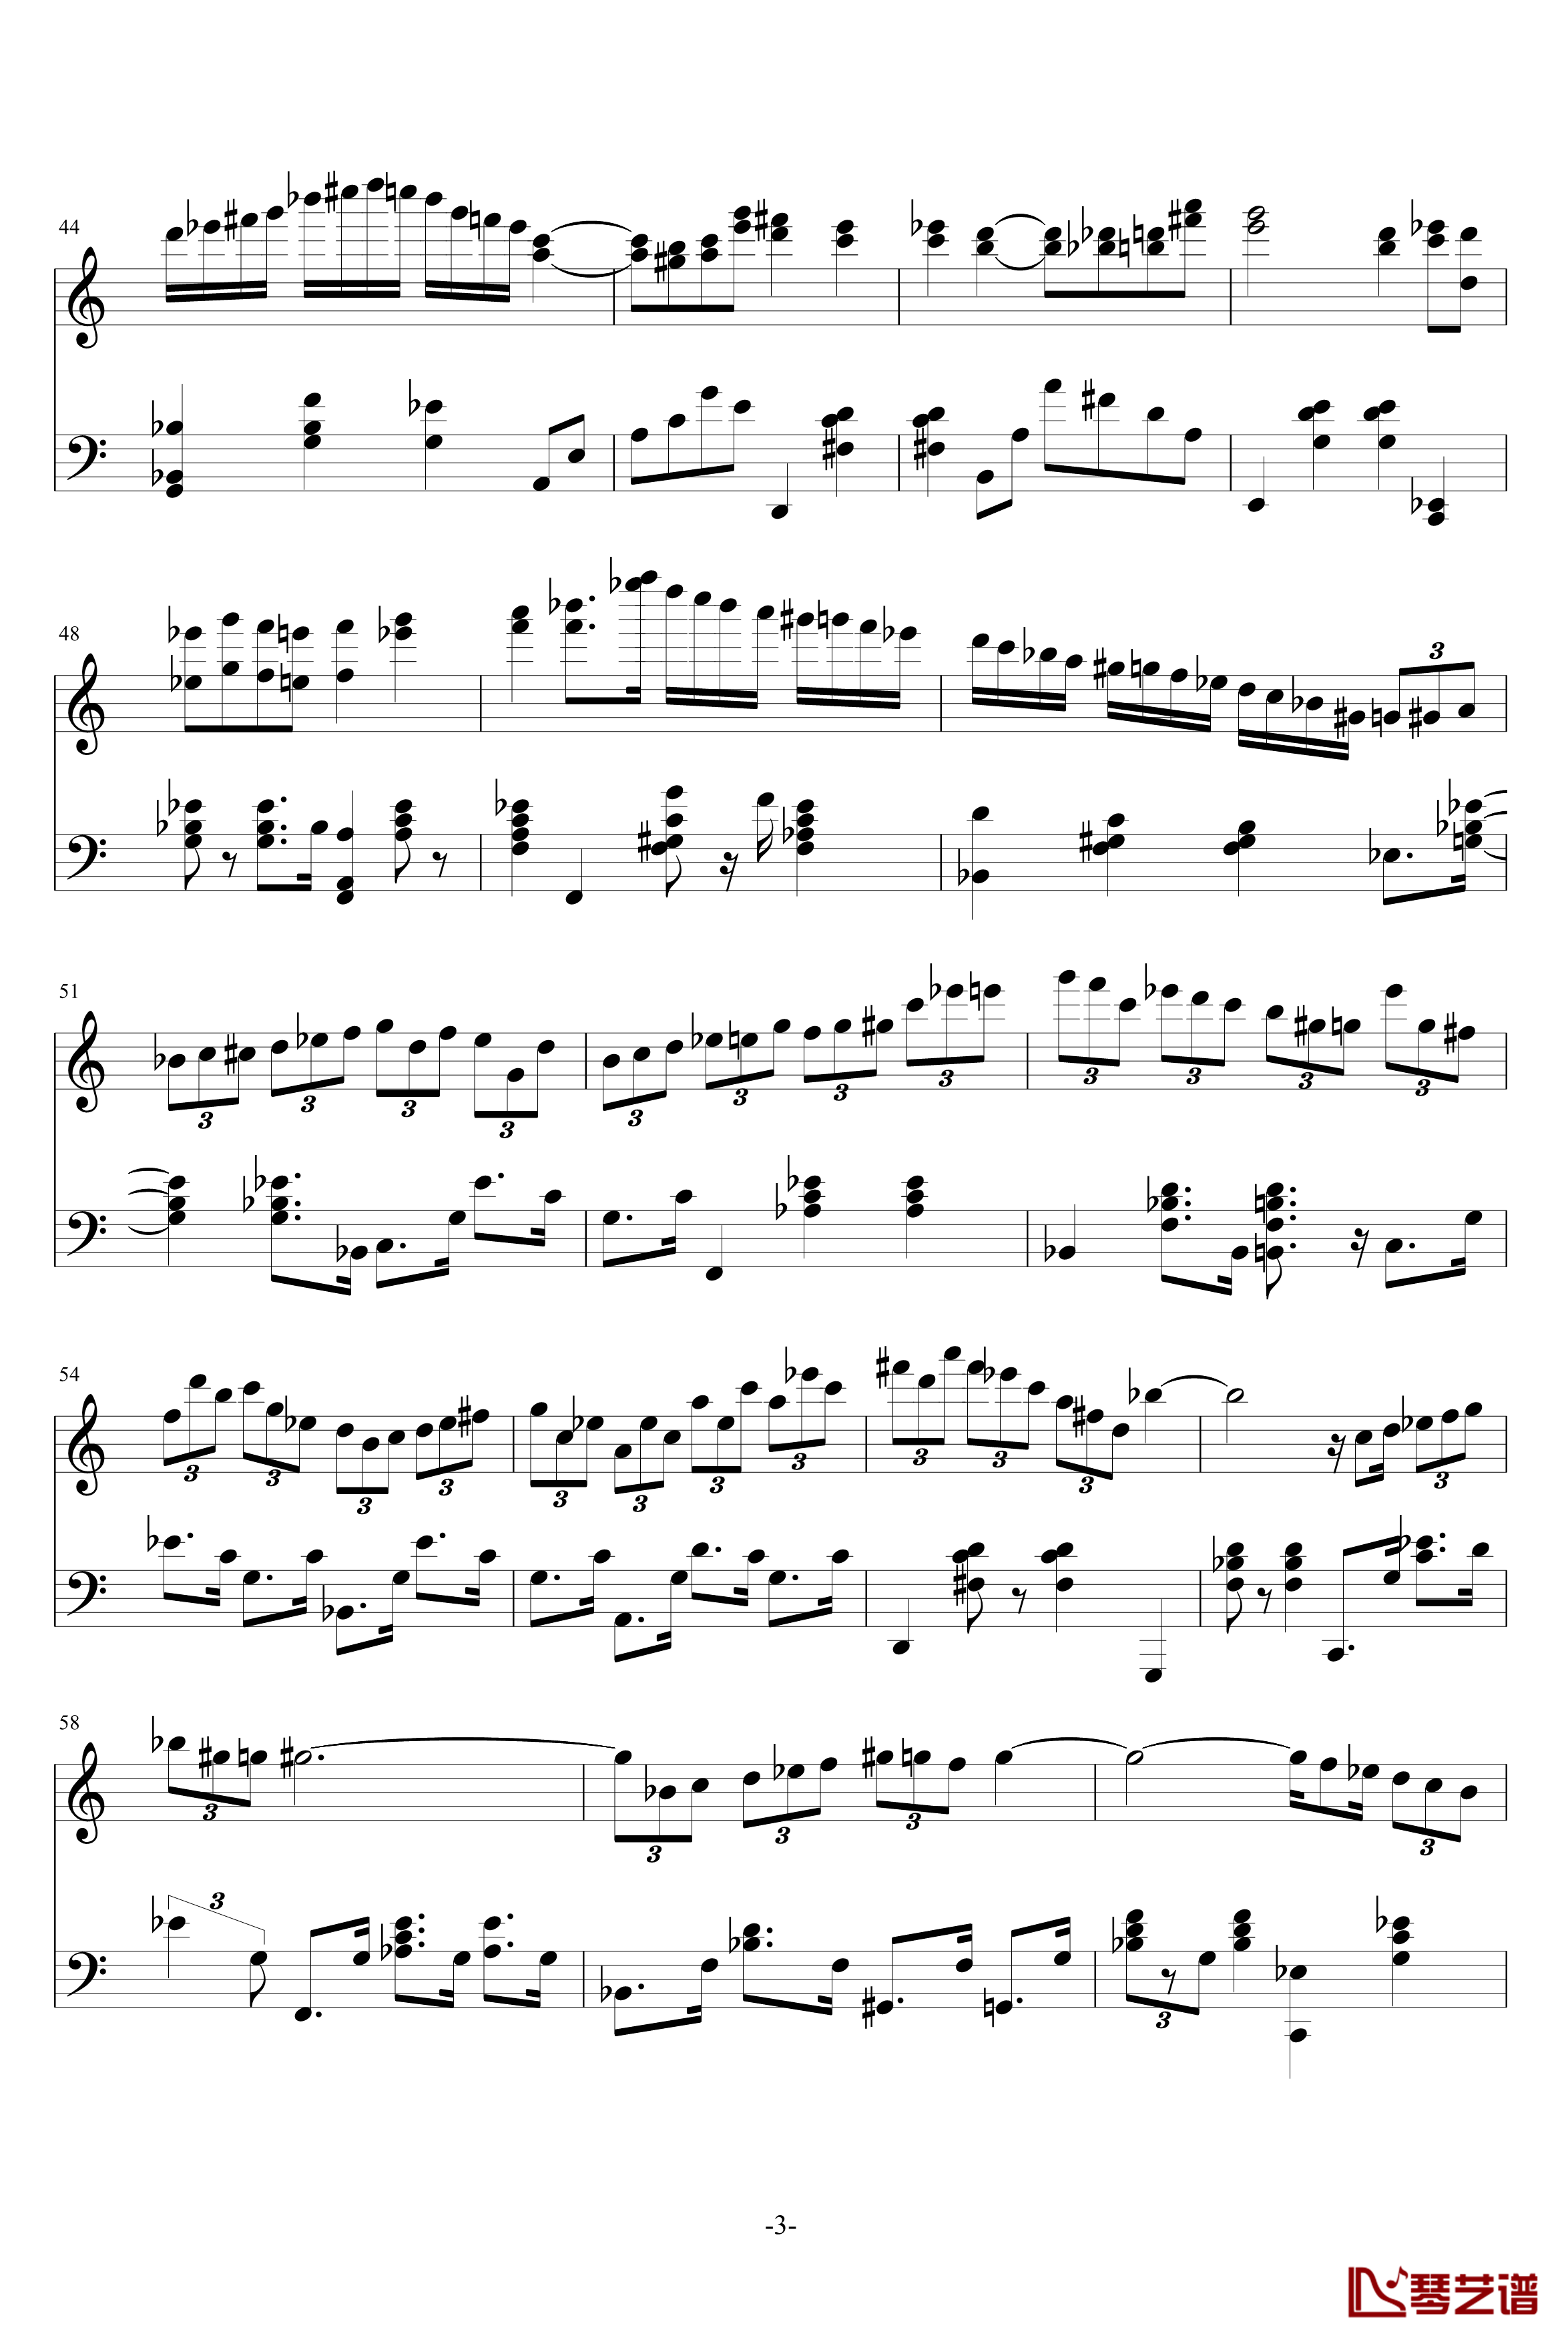 Magic Waltz钢琴谱-基本接近原版-海上钢琴师3